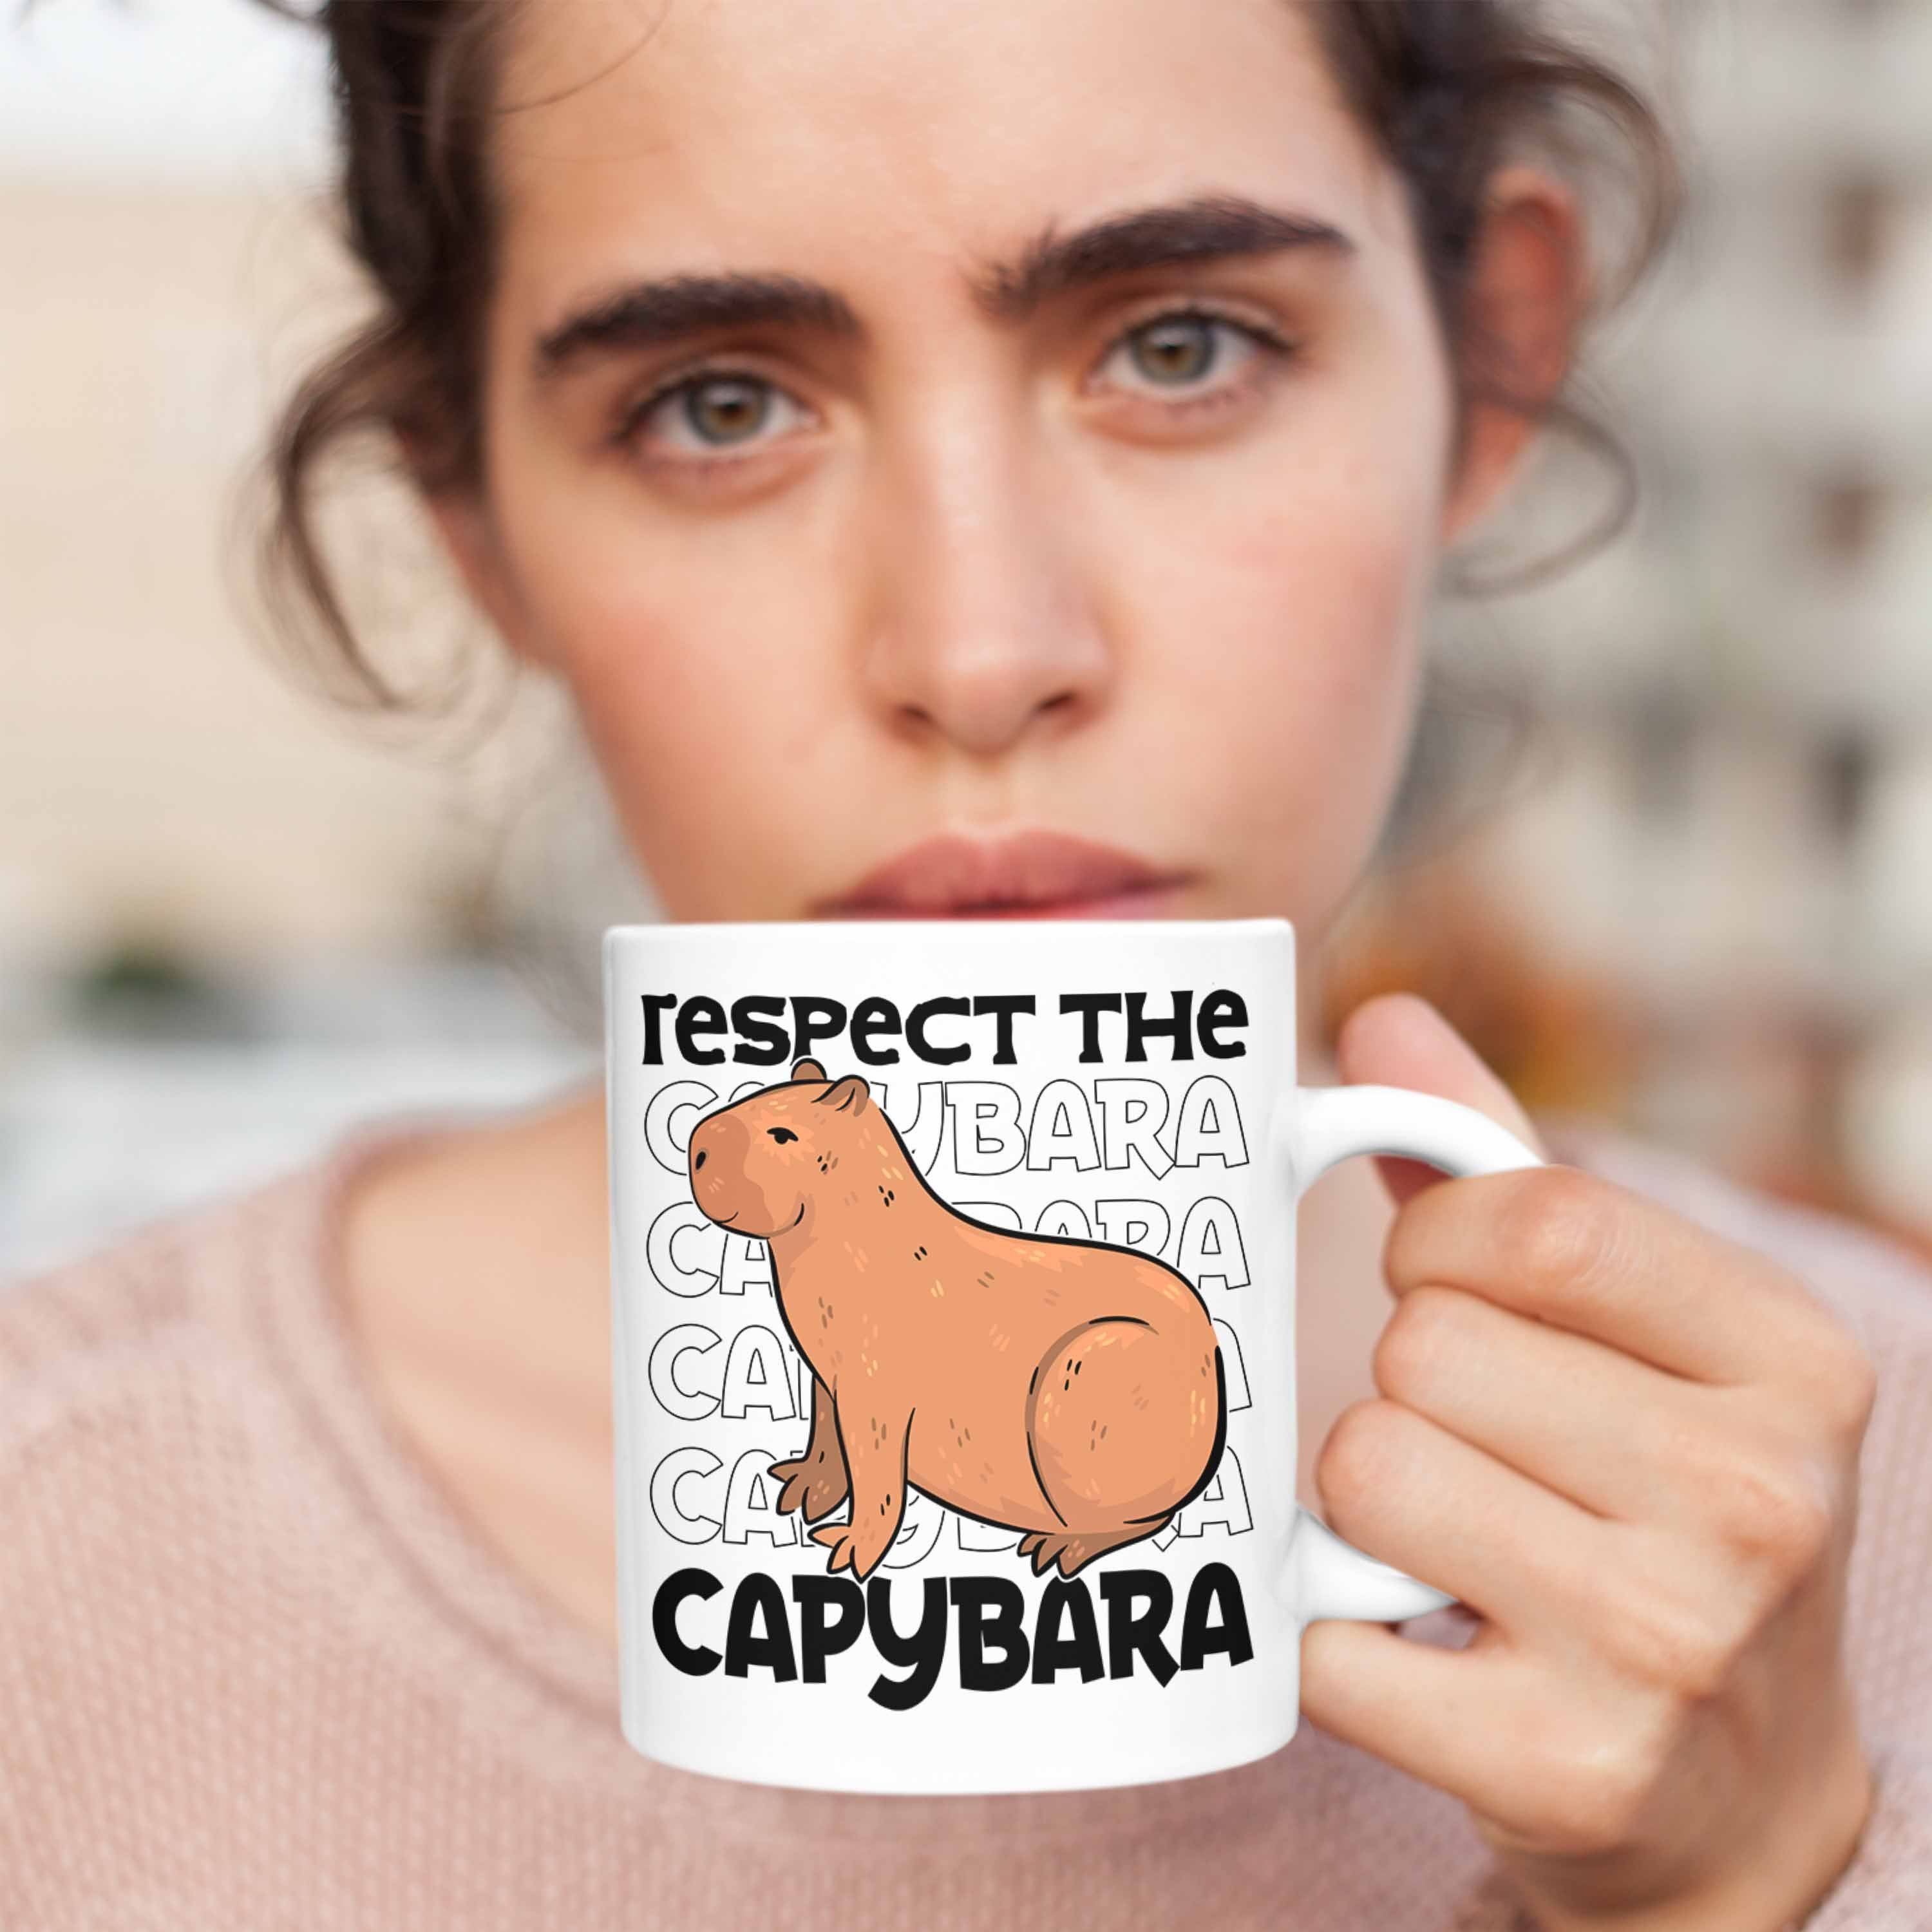 The Trendation Tasse Weiss Respect Capybara für Capy Kaffeetasse Geschenk Tier Capybara Tasse